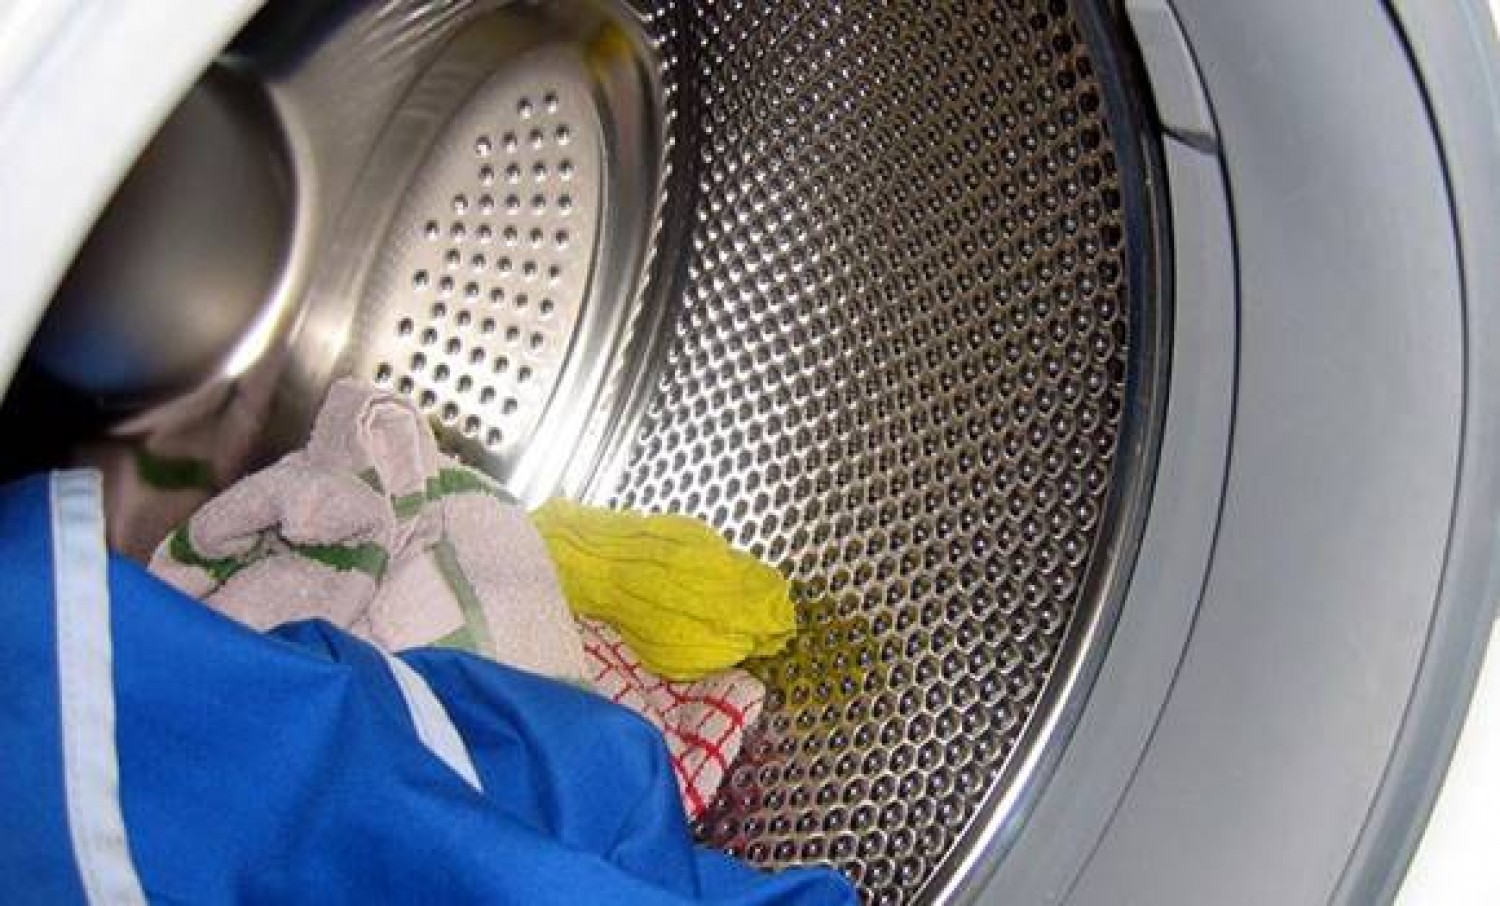 Hibák, amit sokan elkövetnek az automata mosógépekkel